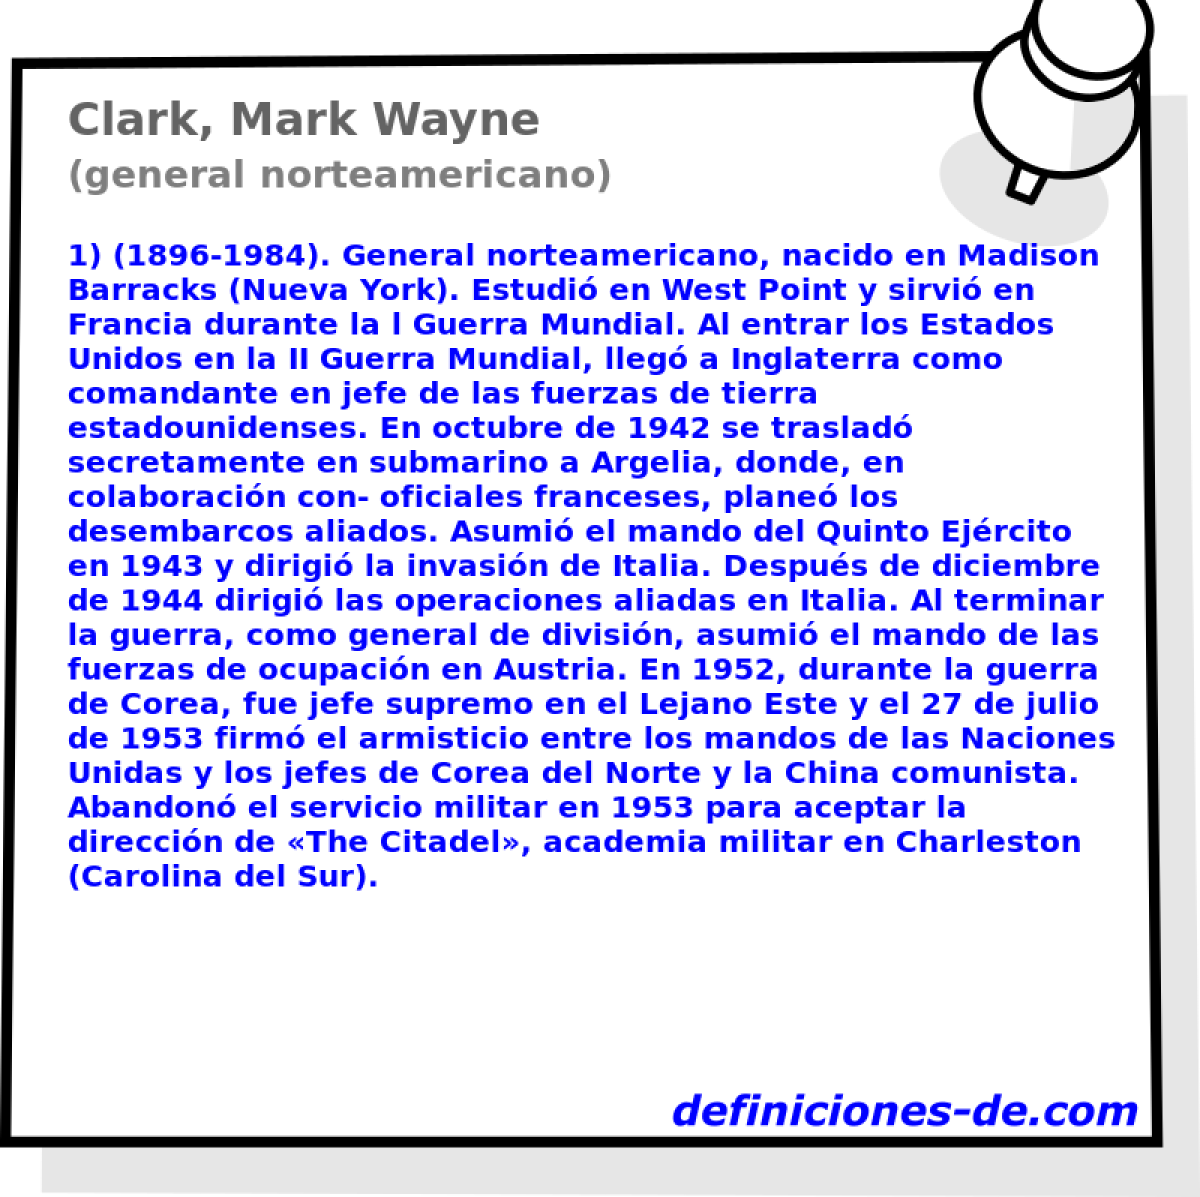 Clark, Mark Wayne (general norteamericano)